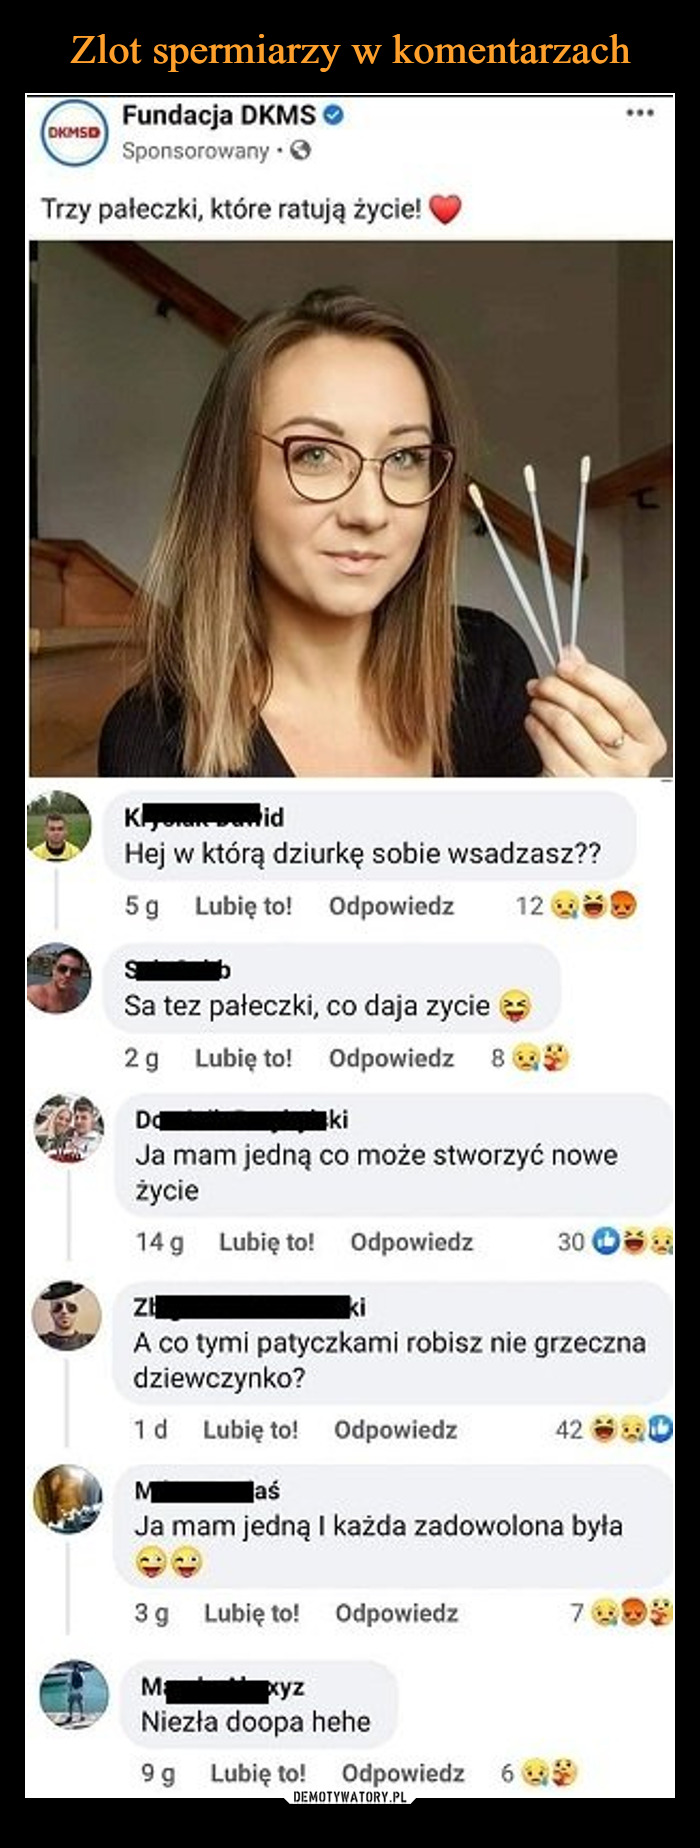 Zlot spermiarzy w komentarzach – Demotywatory.pl